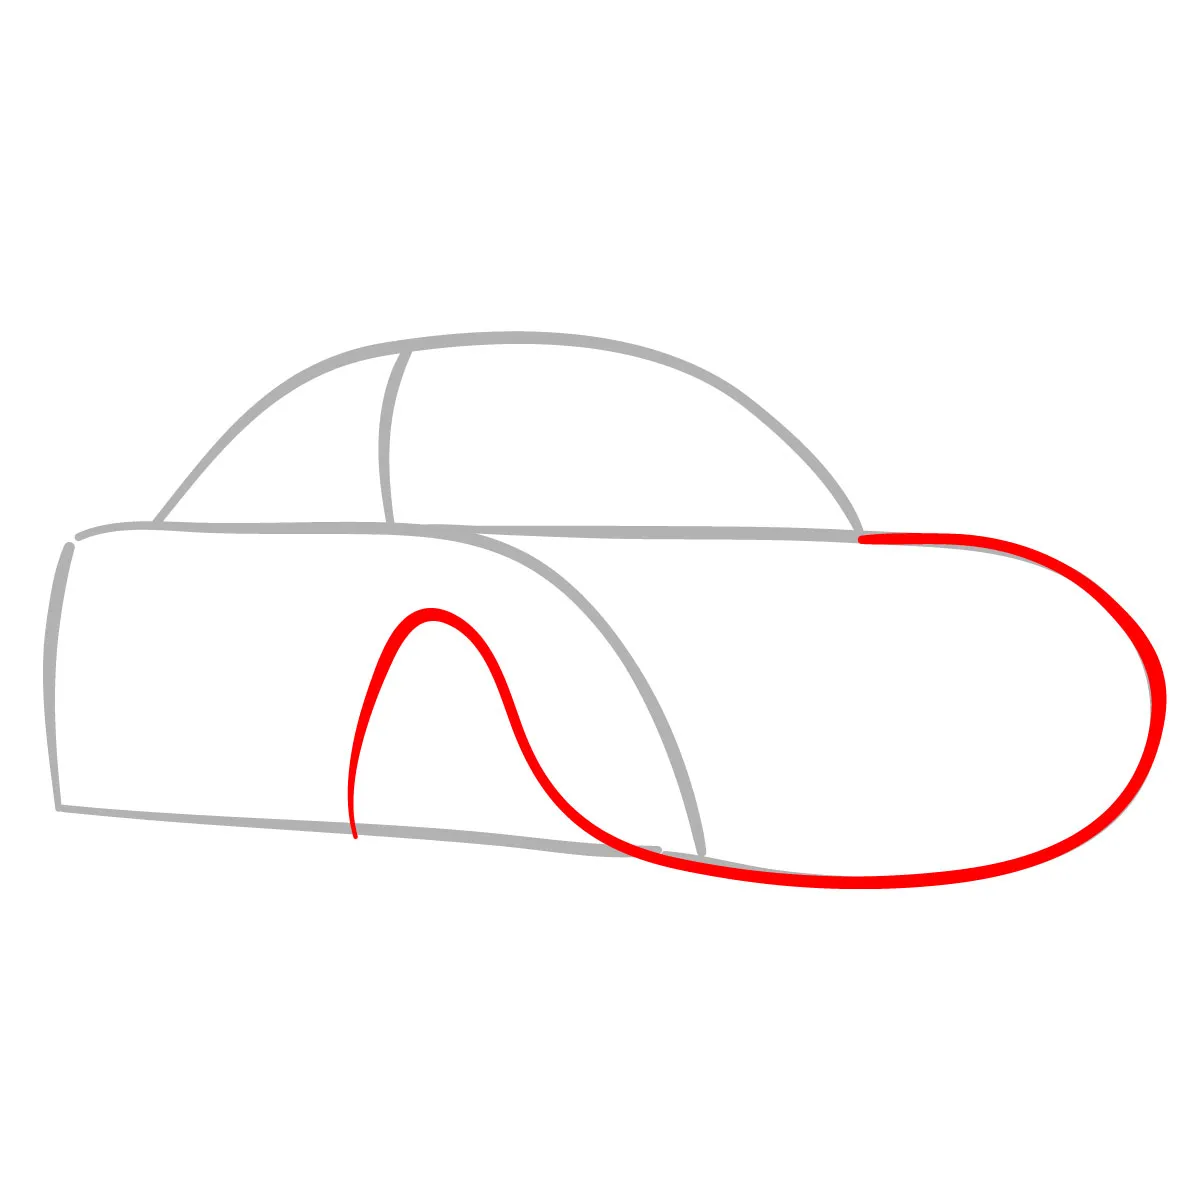 Bạn mong muốn vẽ tranh ô tô mơ ước của bạn? Hãy xem hình ảnh này và khám phá cách vẽ tranh ô tô mơ ước đơn giản!